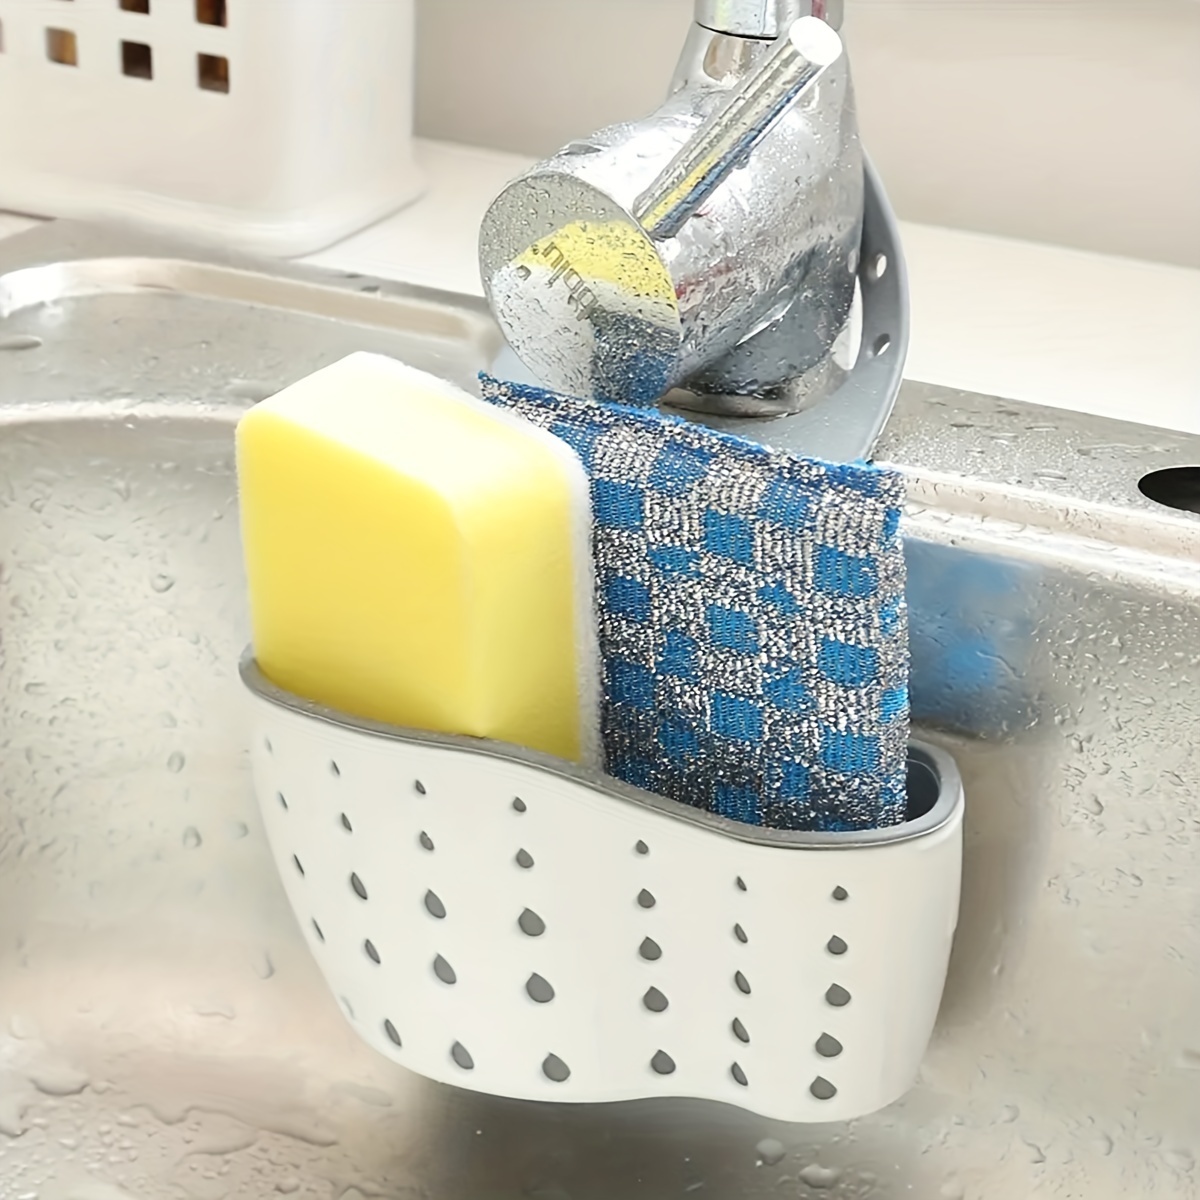 Sponge Wipe Holder Kitchen Sink Organizer with Removable Drain